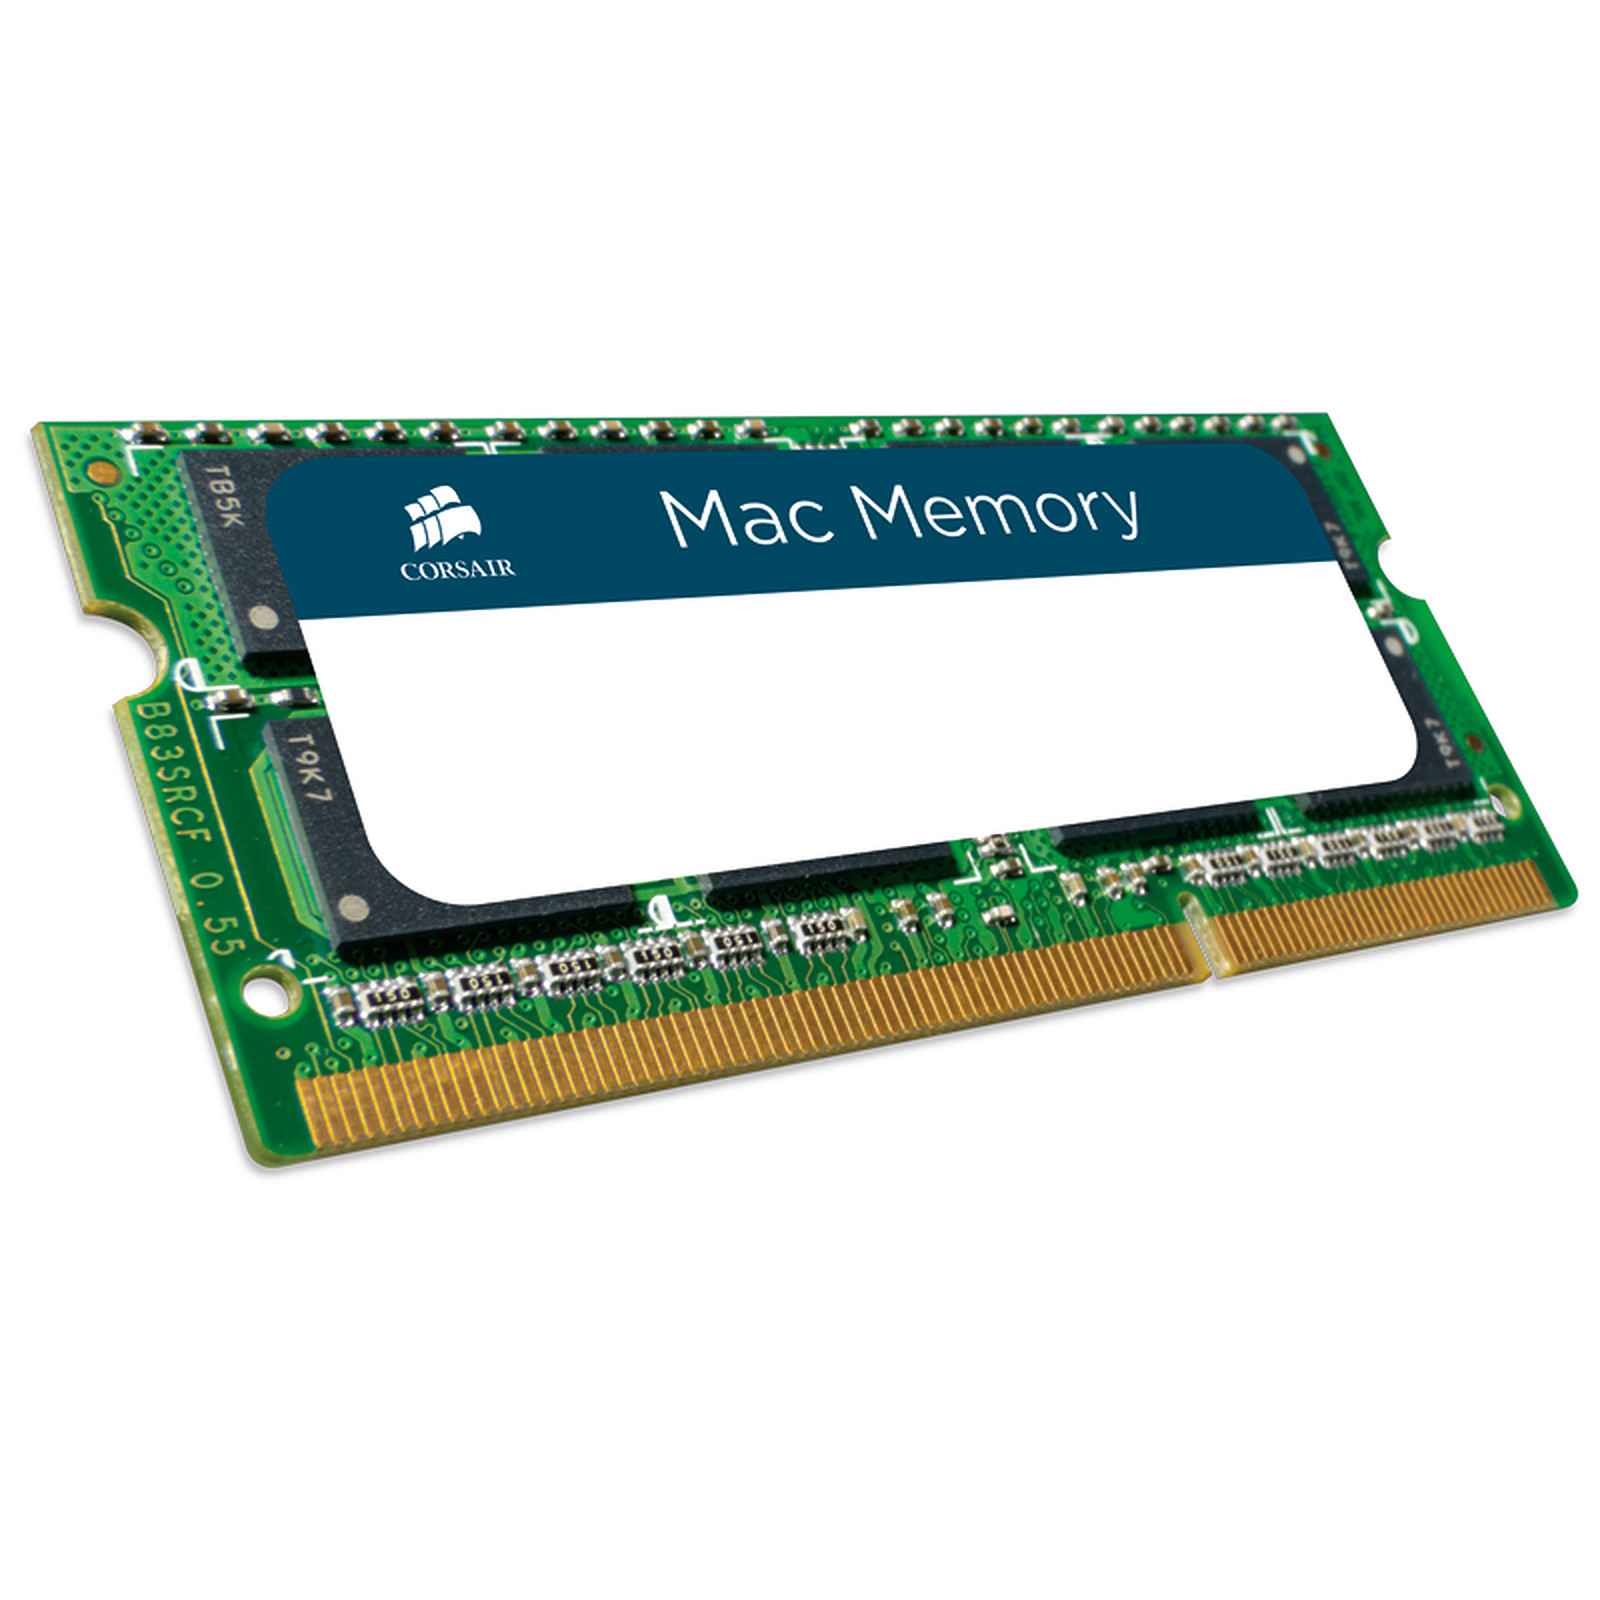 Corsair Mac Memory SO-DIMM 4 Go DDR3 1333 MHz CL9 - Memoire PC Corsair